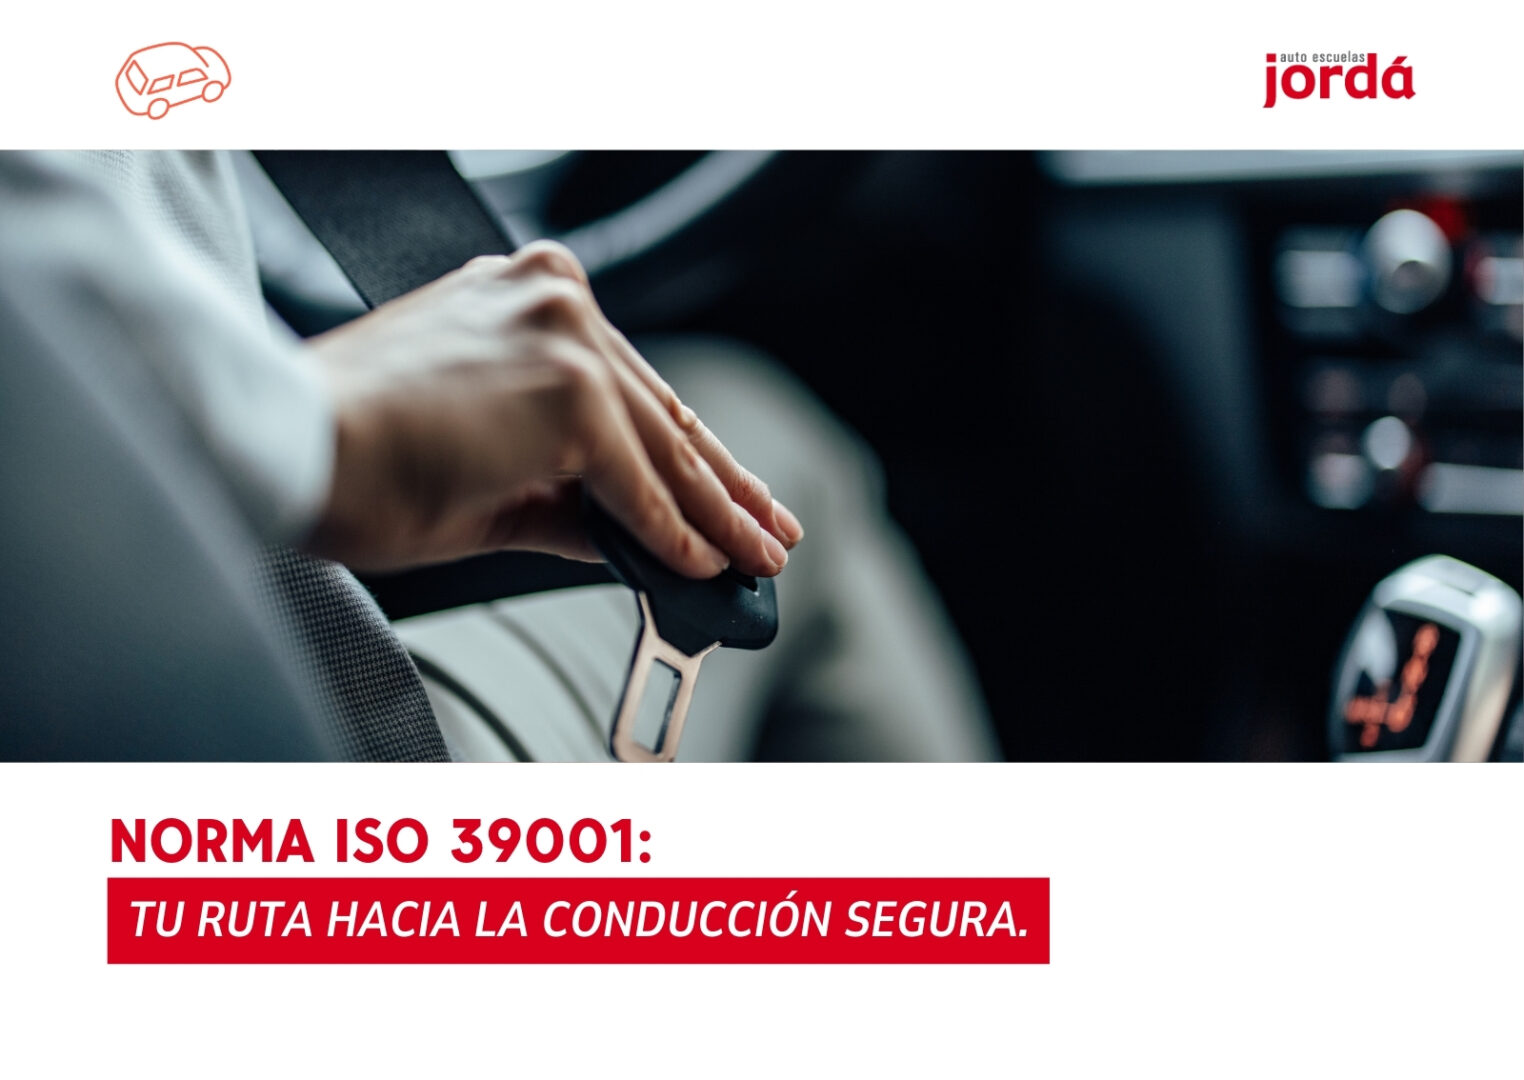 Norma ISO 39001 Tu Ruta Hacia la Conducción Segura